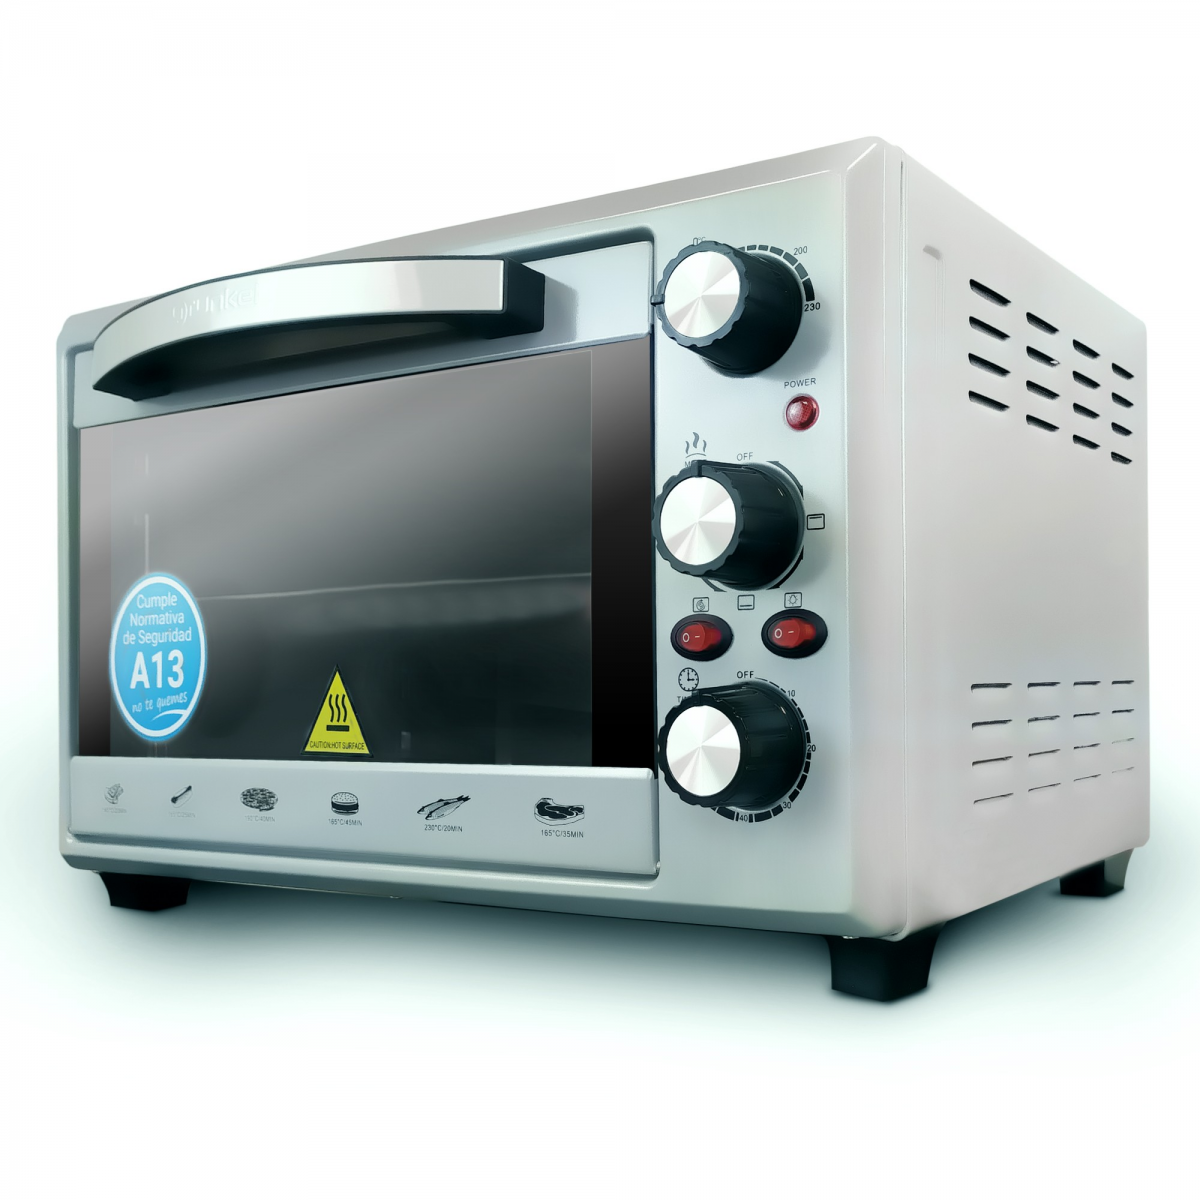 Mini horno eléctrico de sobremesa HR-10MINI de 10 litros y 800W